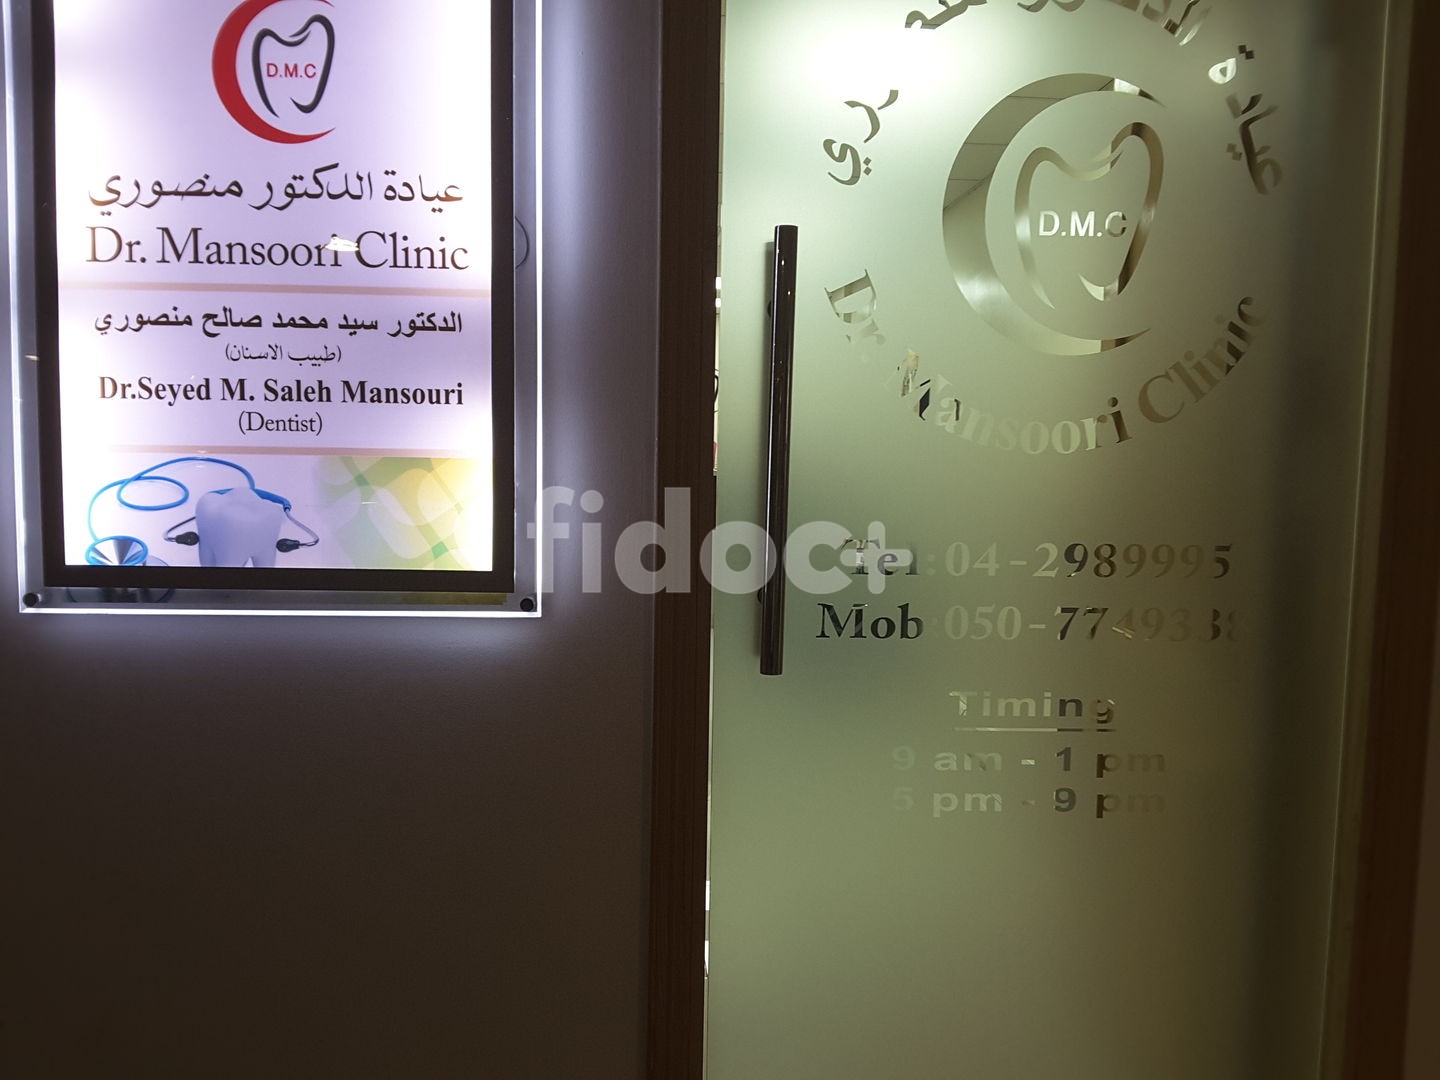 Dr. Mansoori Clinic, Dubai